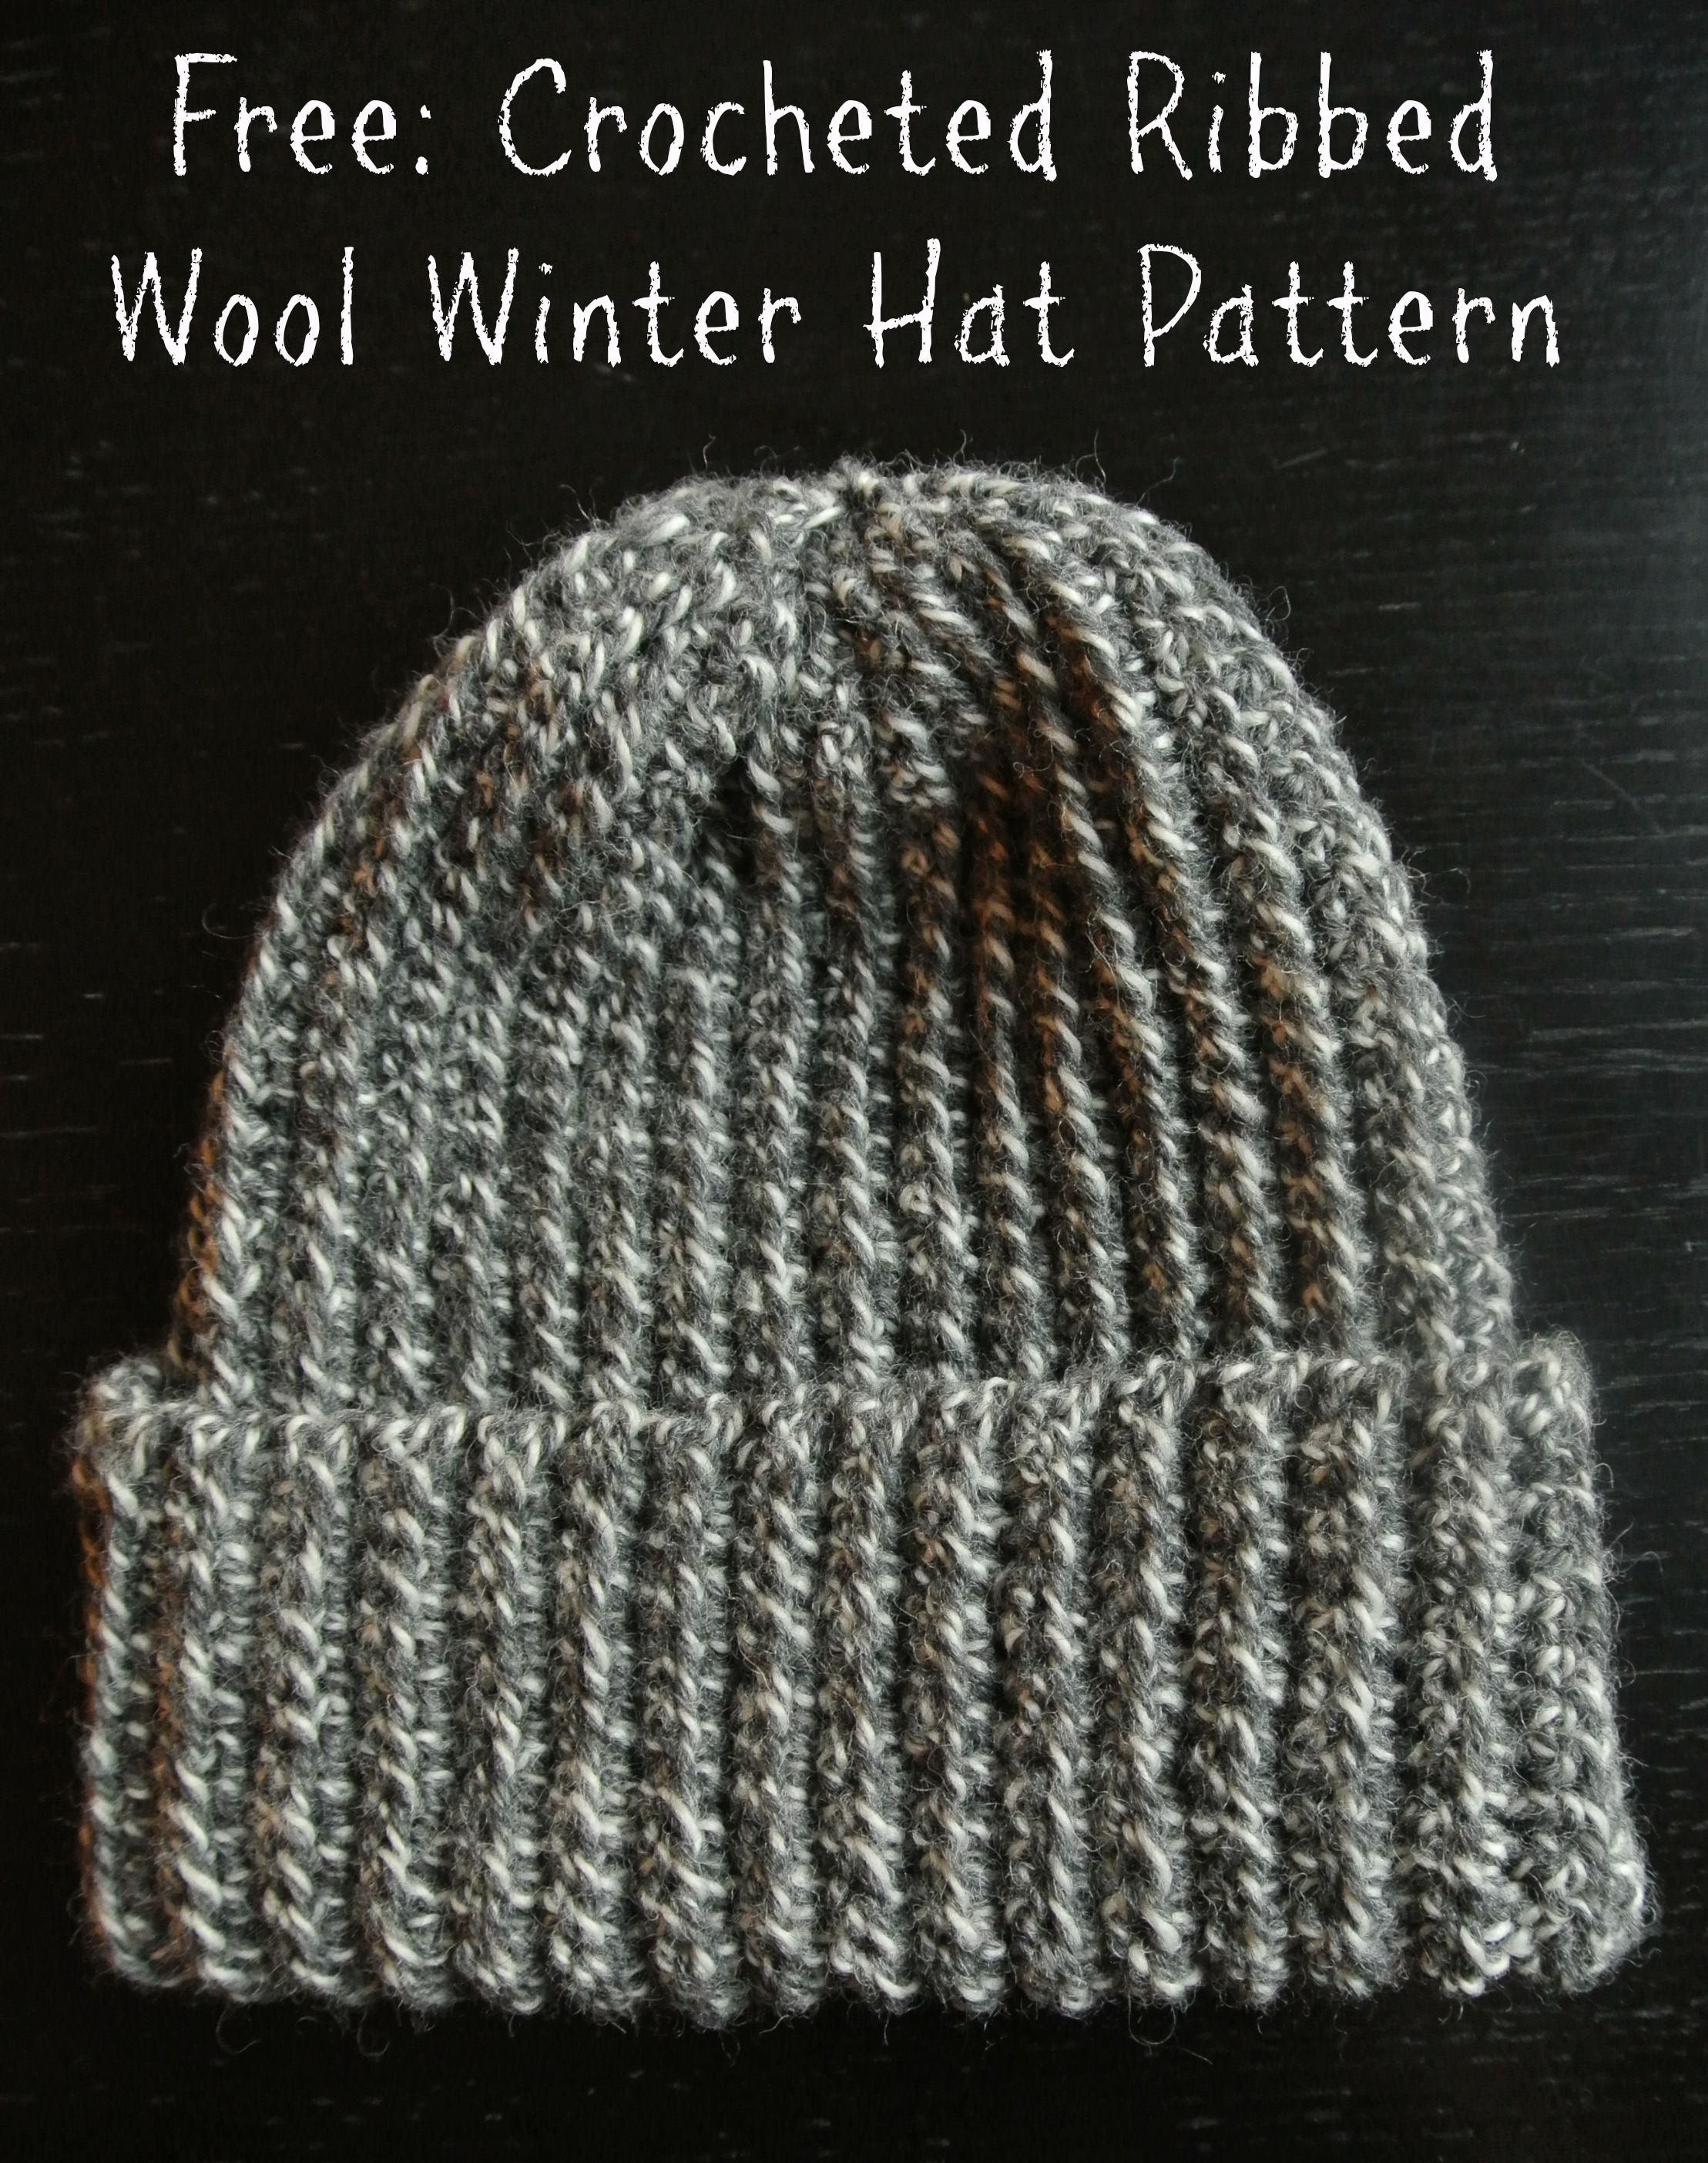 Crochet Winter Hat Free Pattern Crochet Hat 4 Stuff I Want To Make Crochet Hats Crochet